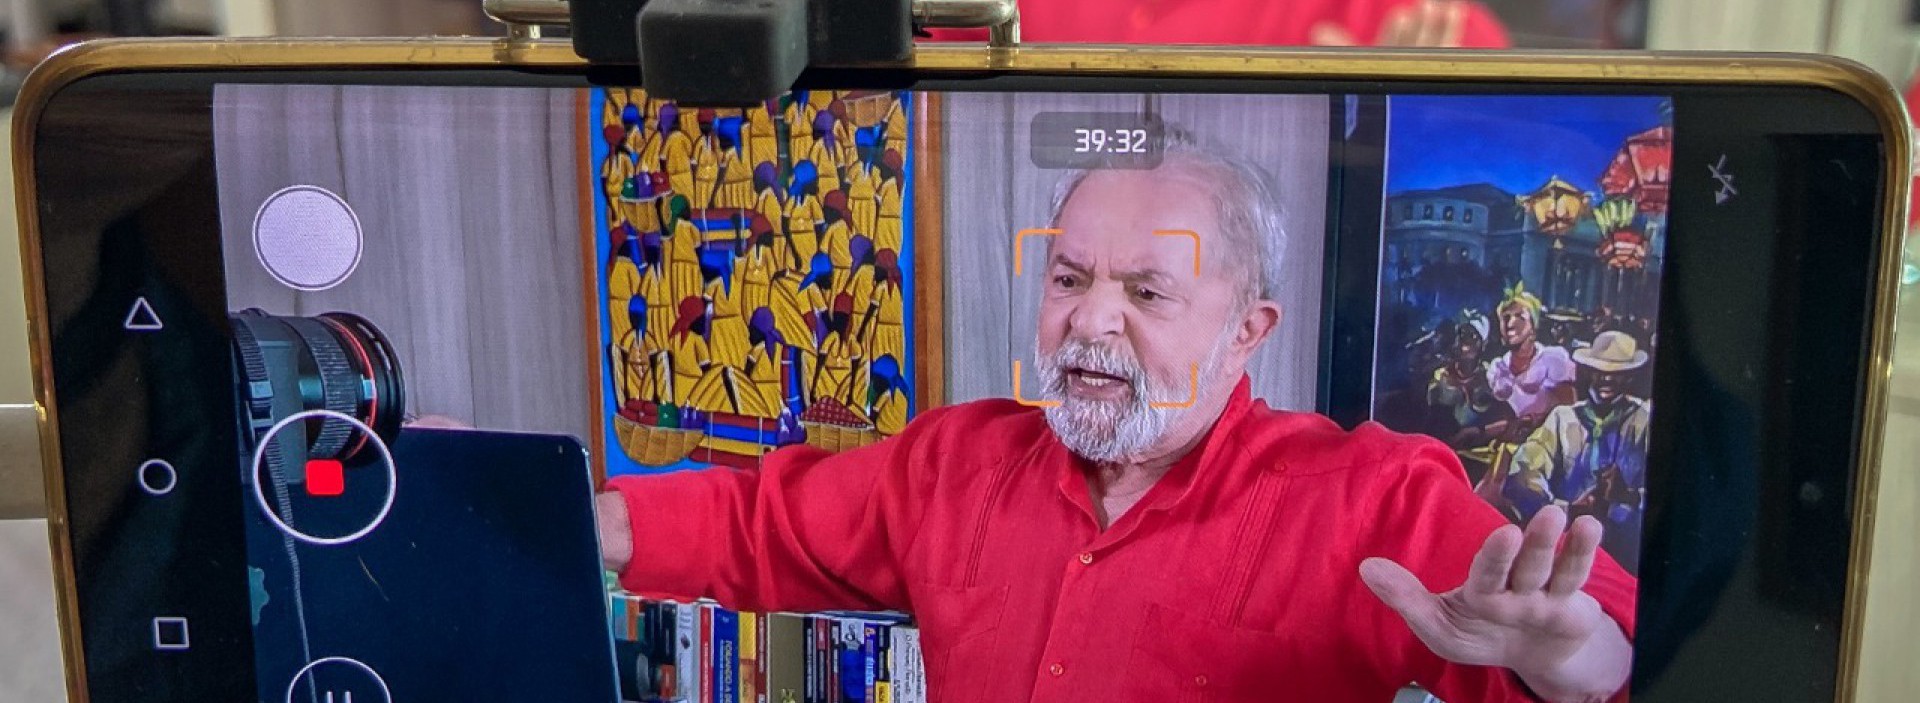 CAPA - Ex-presidente Lula em entrevista à Rádio O POVO-CBN (Foto: Ricardo Stucker )